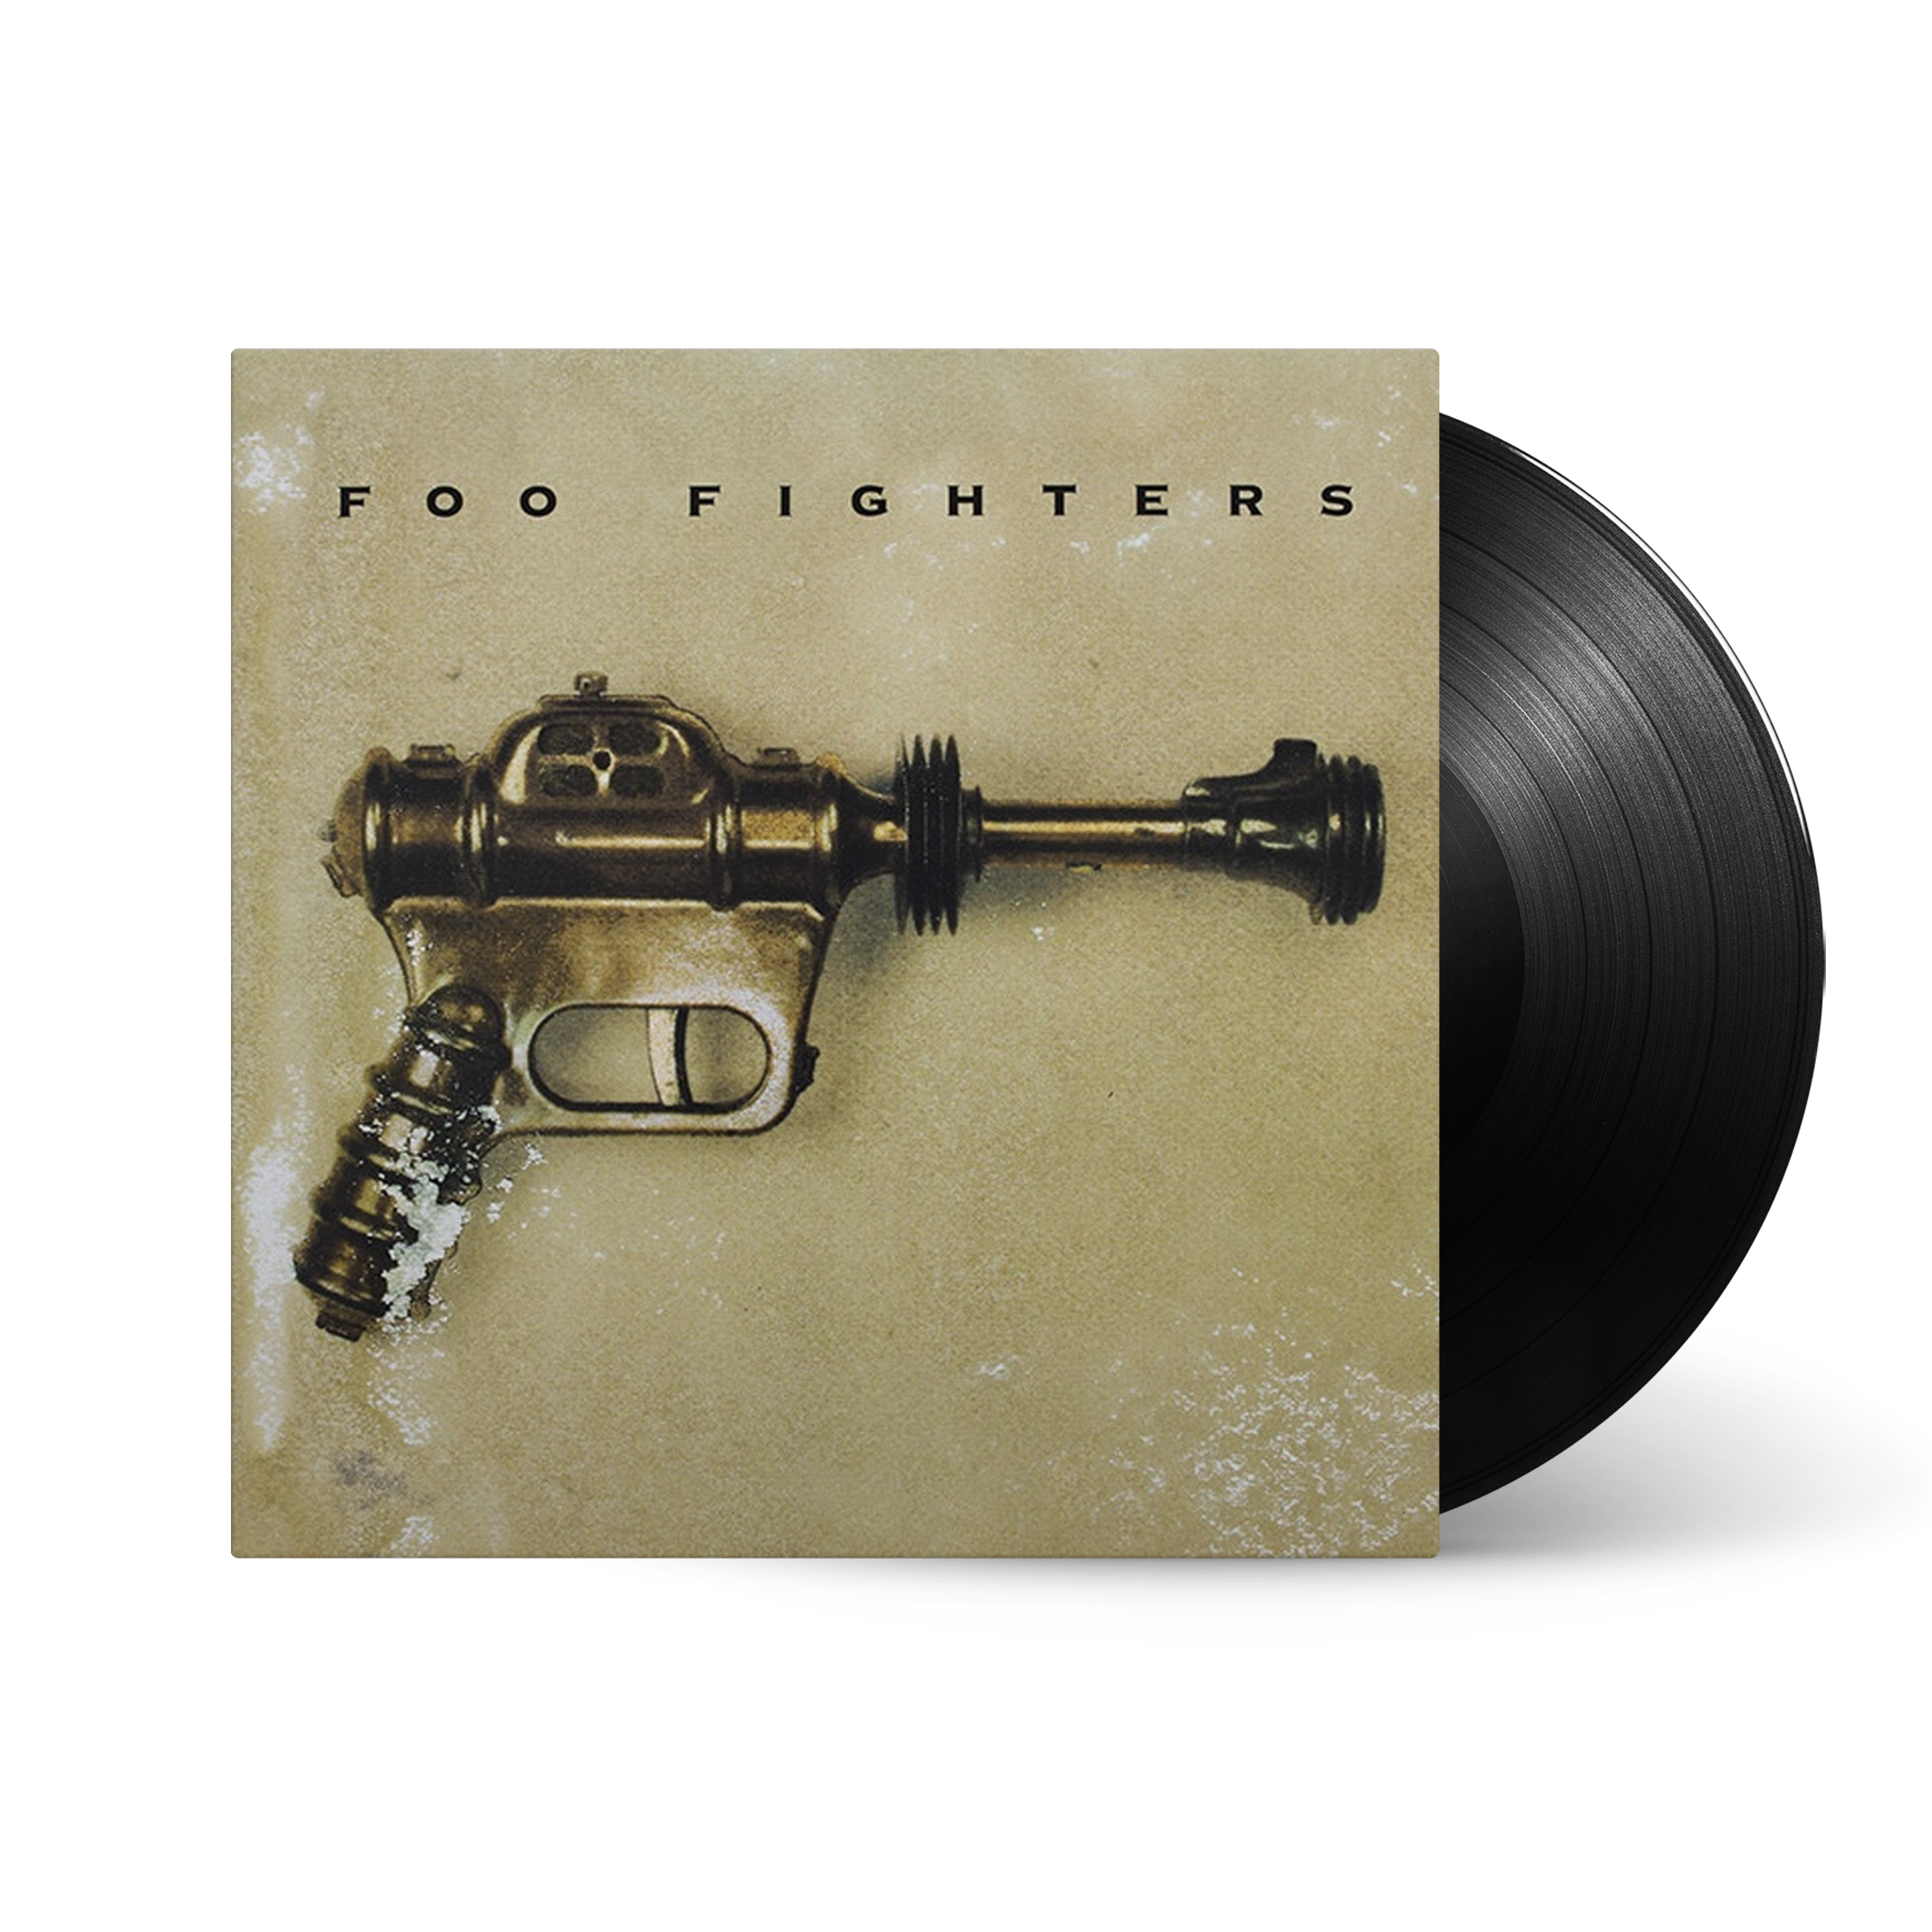 Foo Fighters - Foo Fighters: Vinyl LP